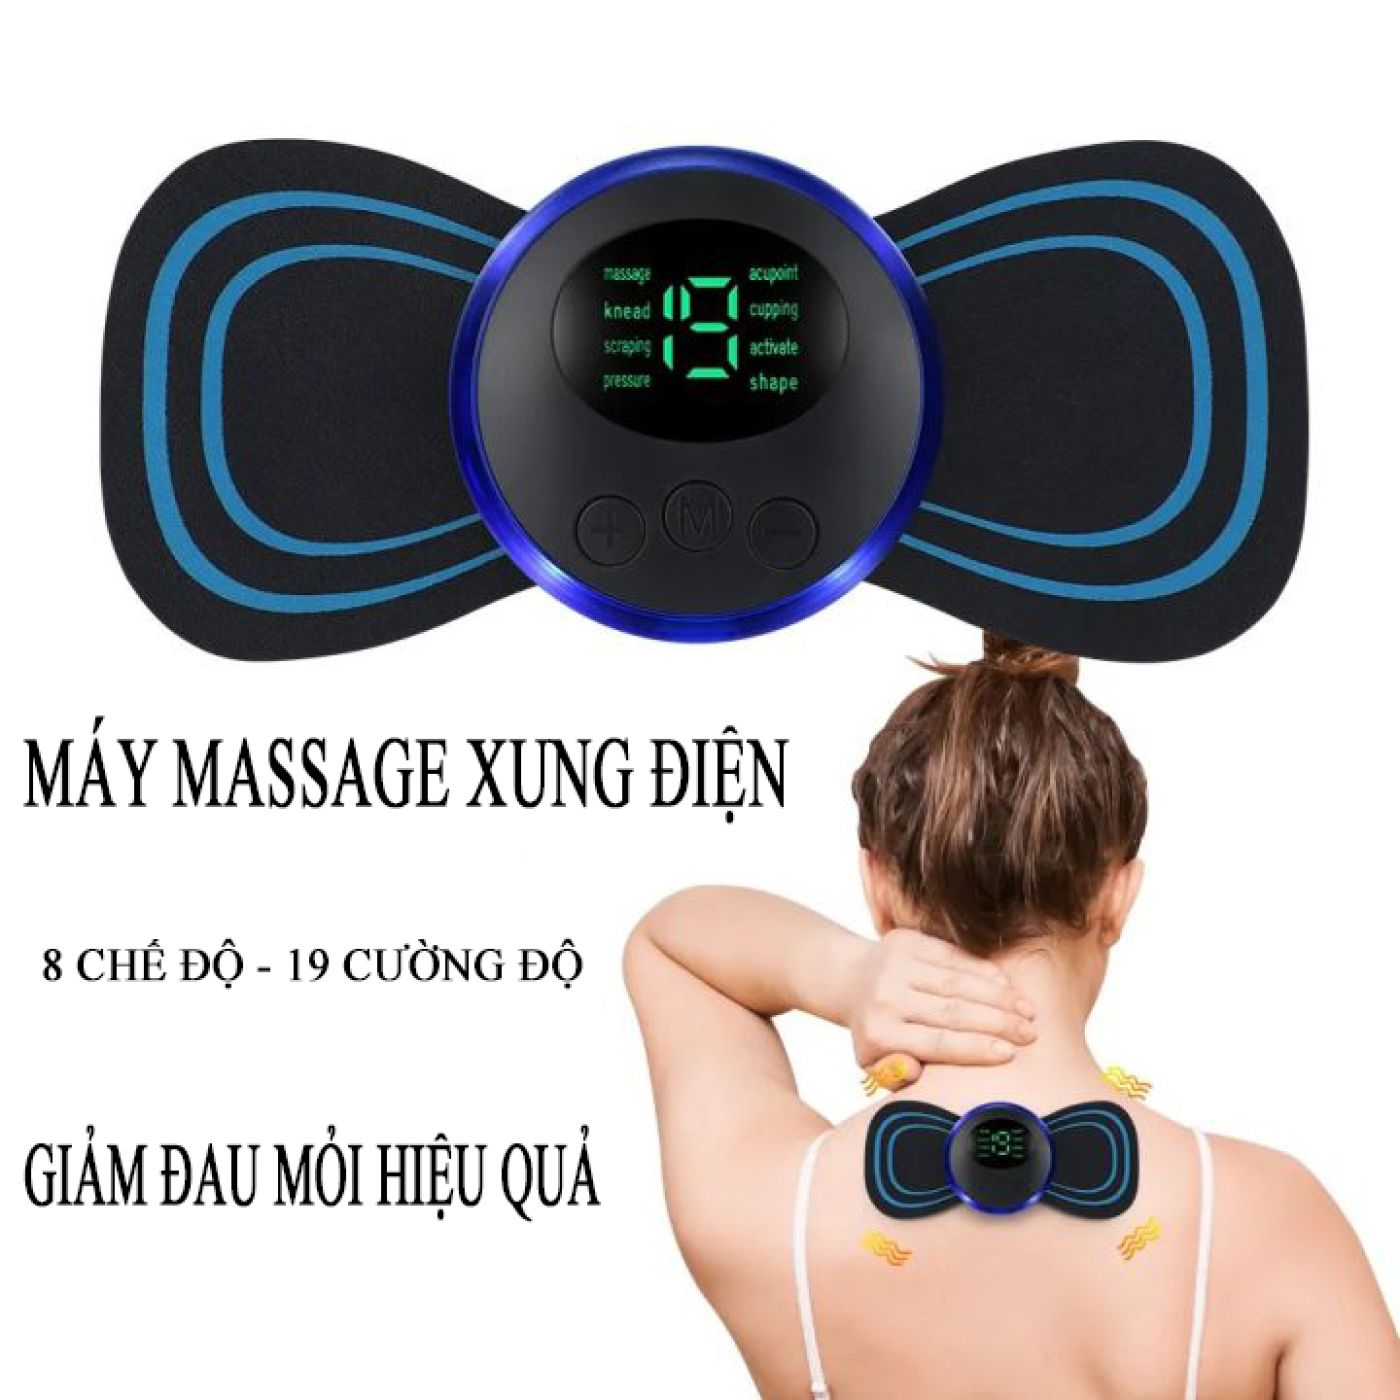 Miếng massage xung điện cổ vai gáy toàn thân, giảm đau nhức hiệu quả với 8 chế độ